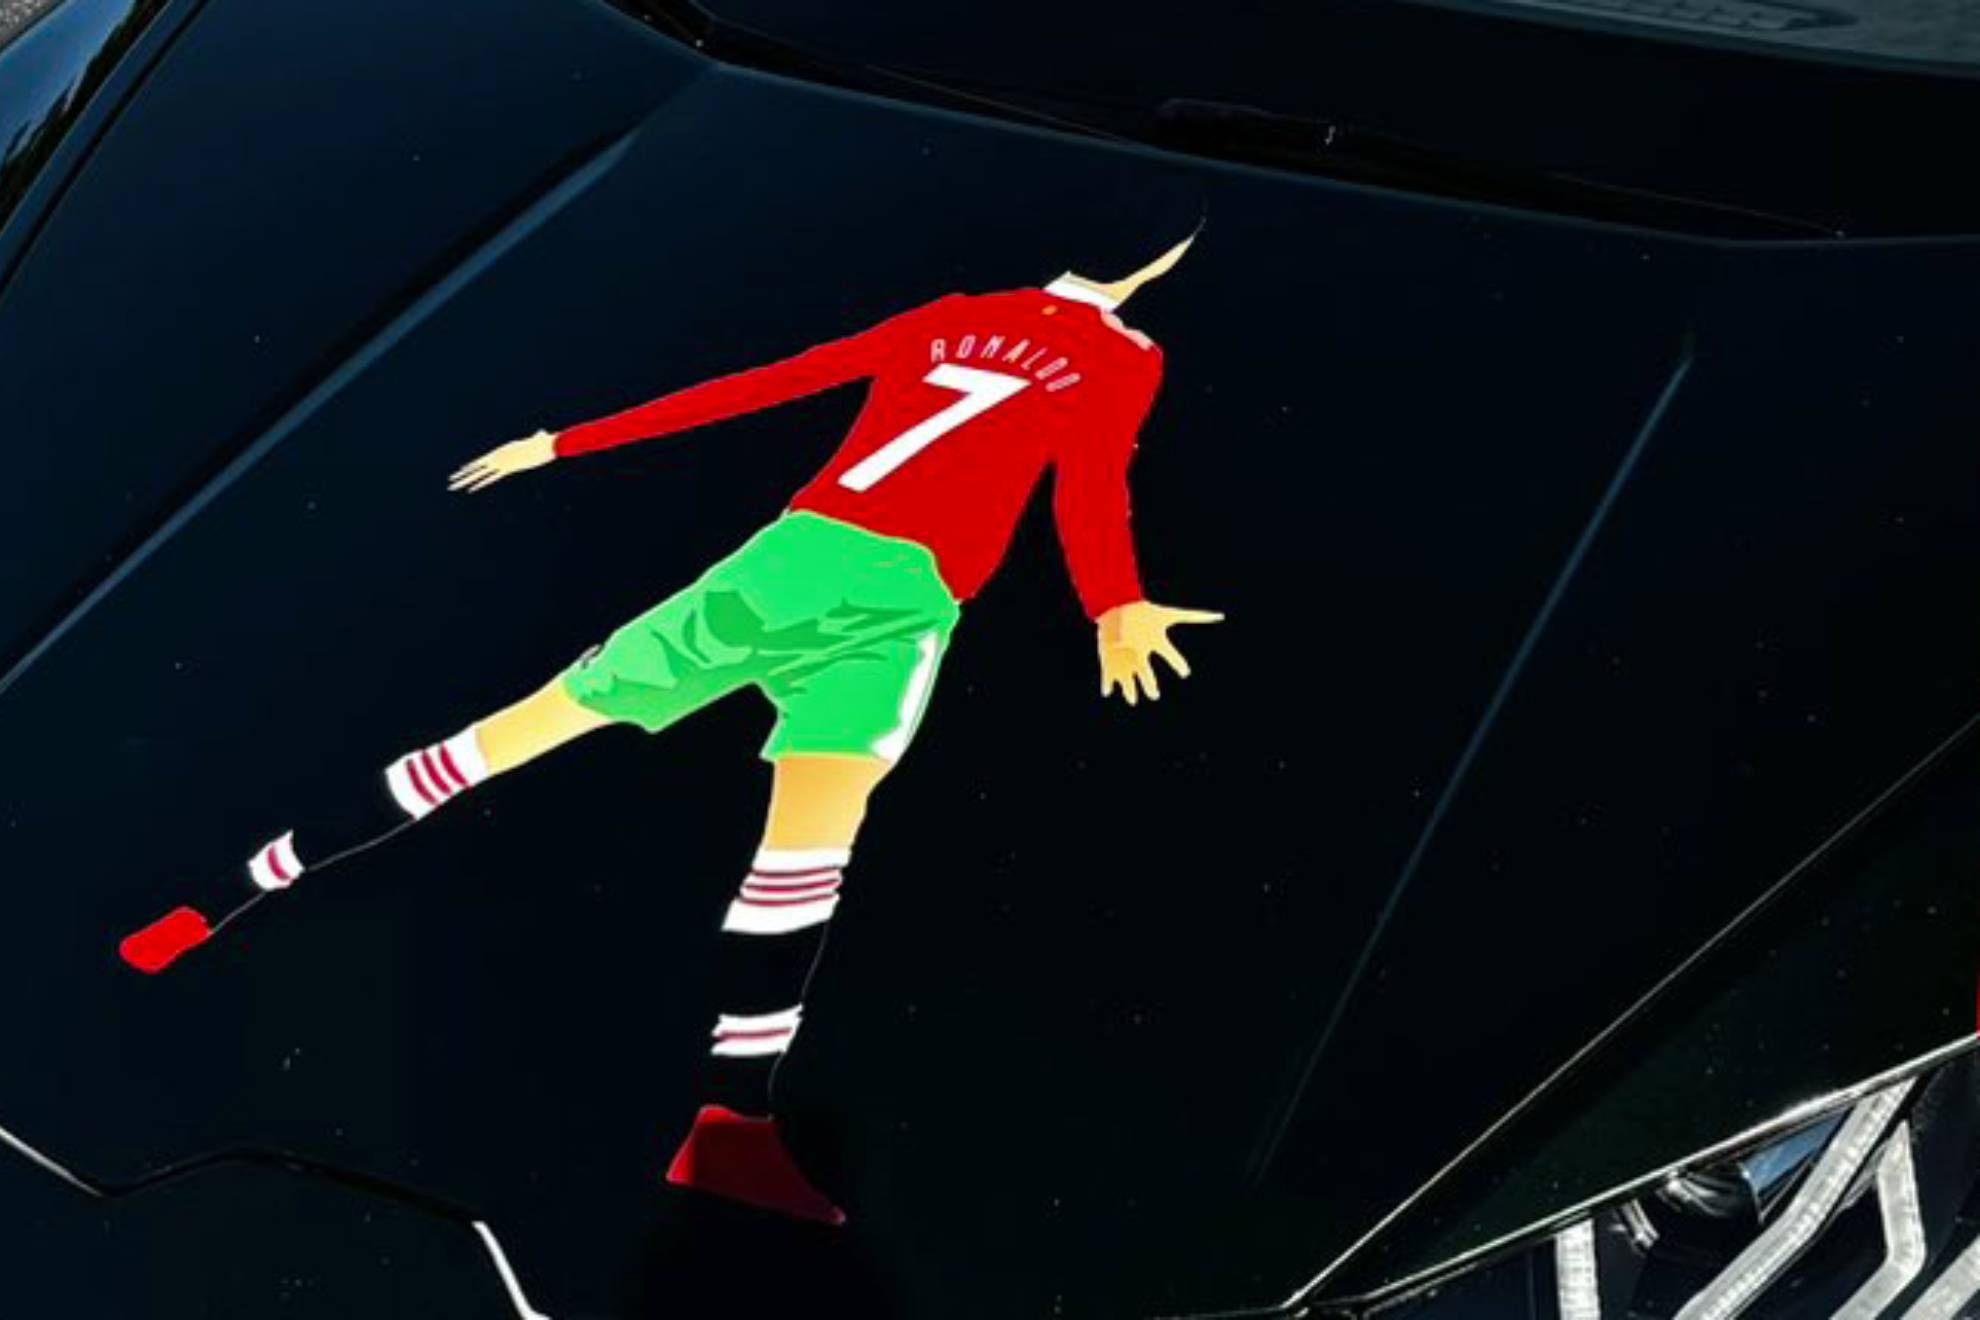 El detalle de Cristiano Ronaldo en el coche de IShowSpeed